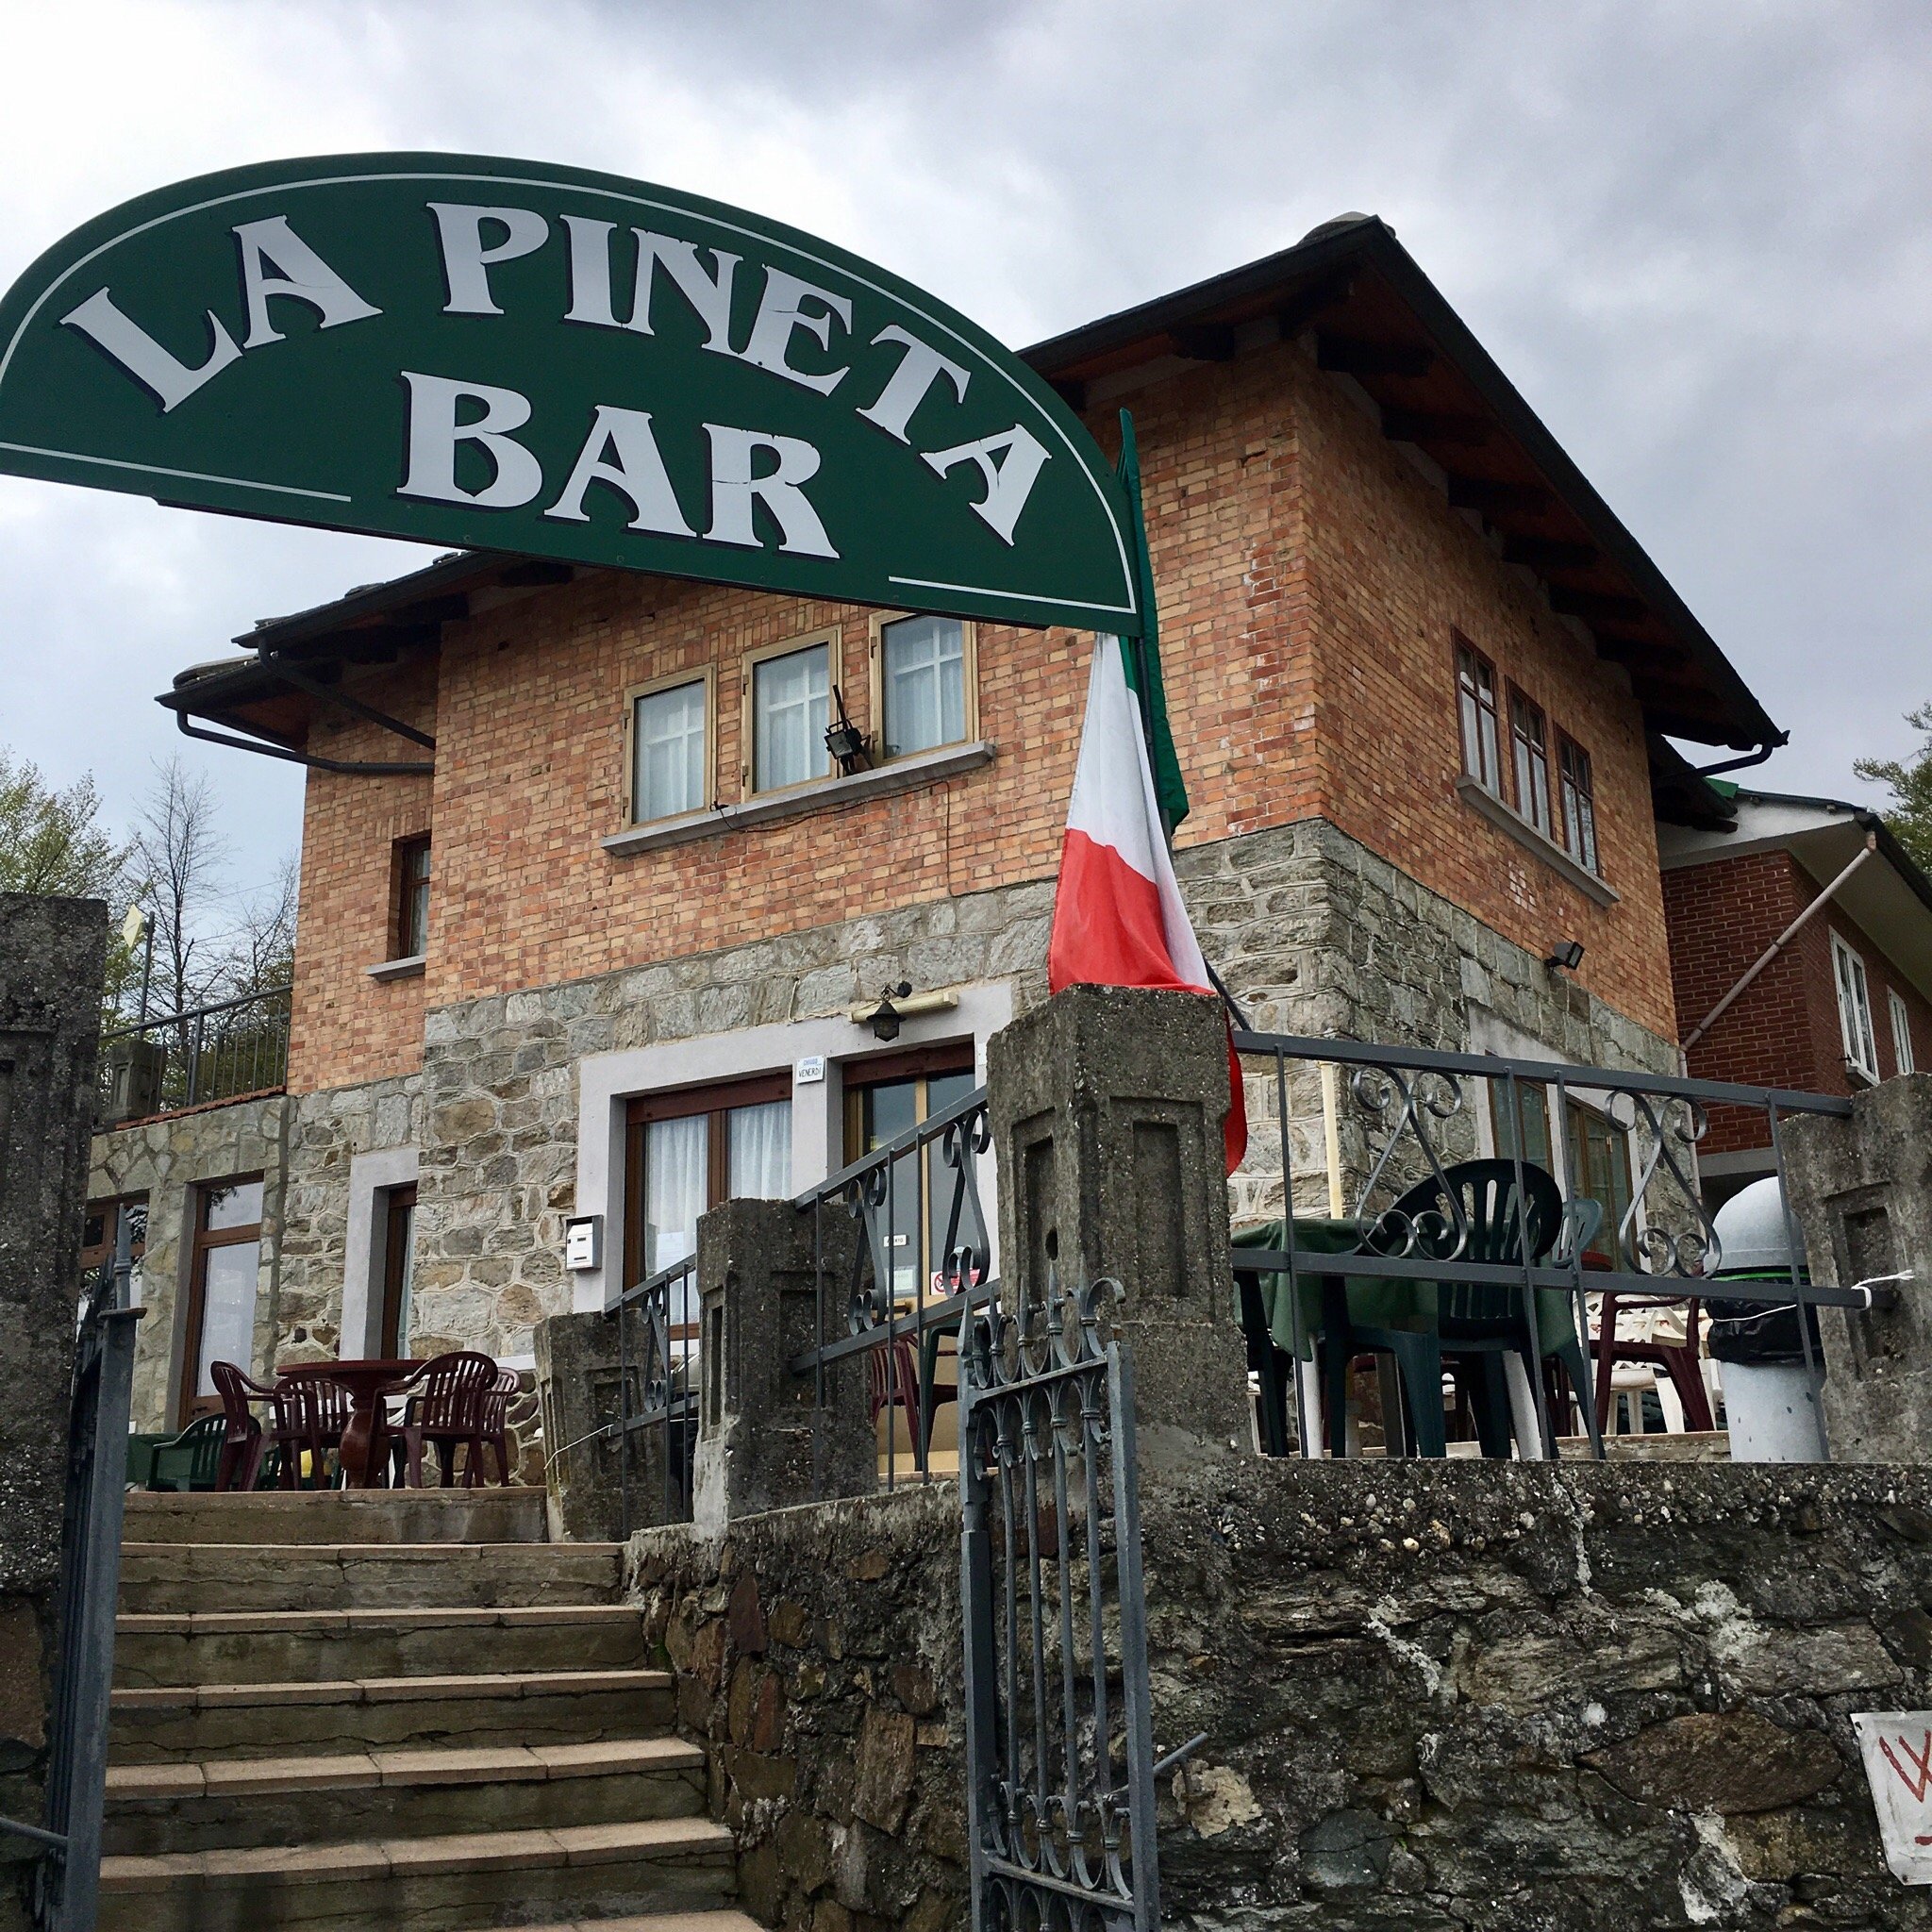 La Pineta Bar, Rubiana